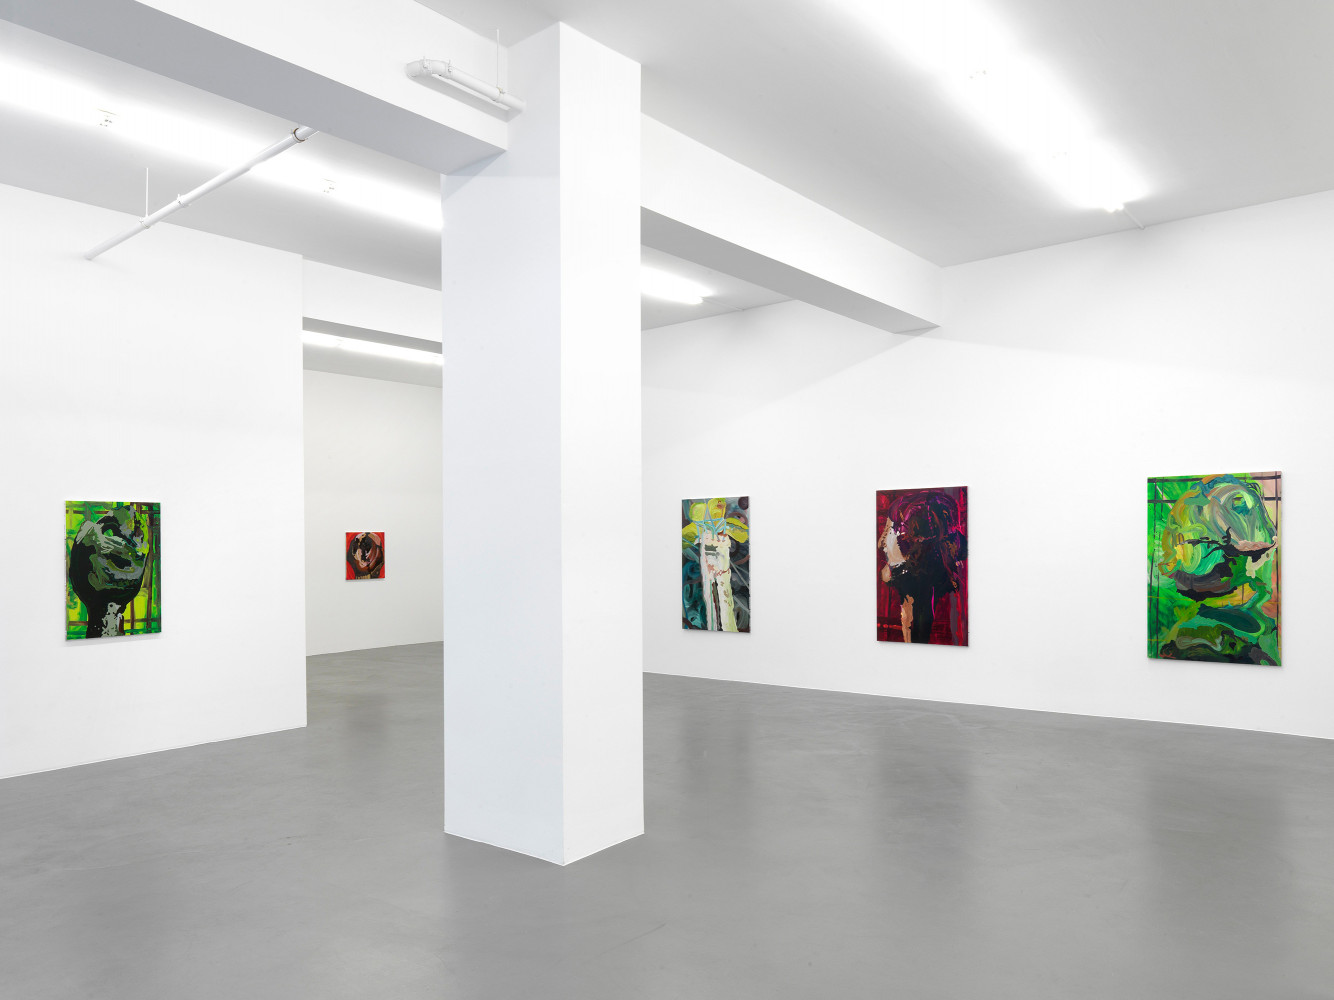 Clare Woods, ‘The Dark Matter’, Installation view, Buchmann Galerie, 2012